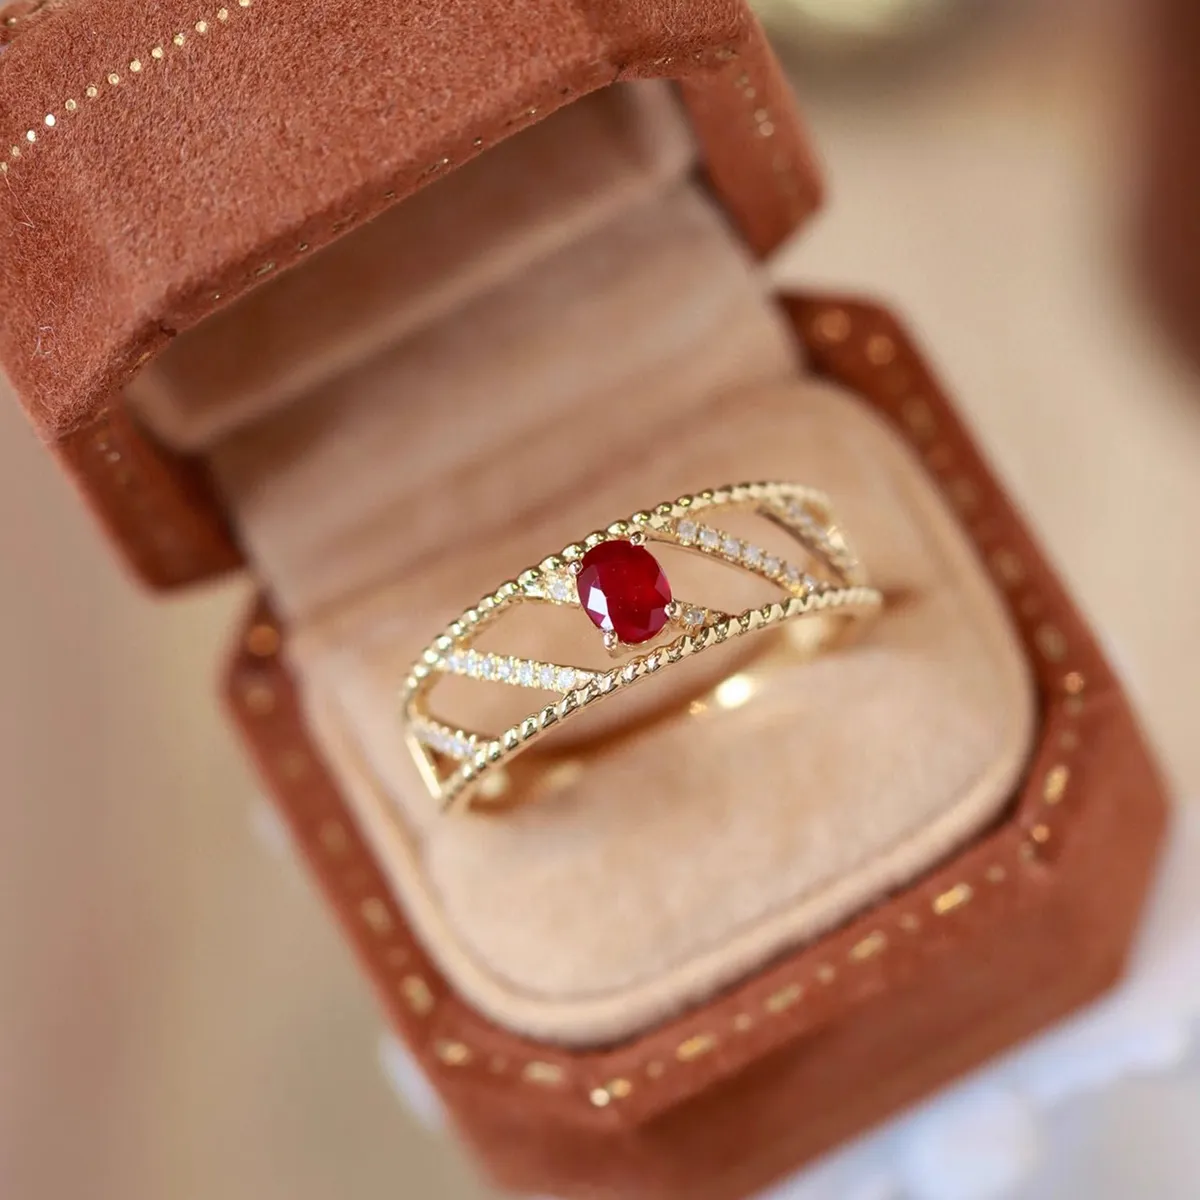 S925 Sterling Zilveren Mosang Diamanten Ring Hoofdring Voor Koppels, Vrouwen Ring, Valentijnsdag Cadeau Originele Niche